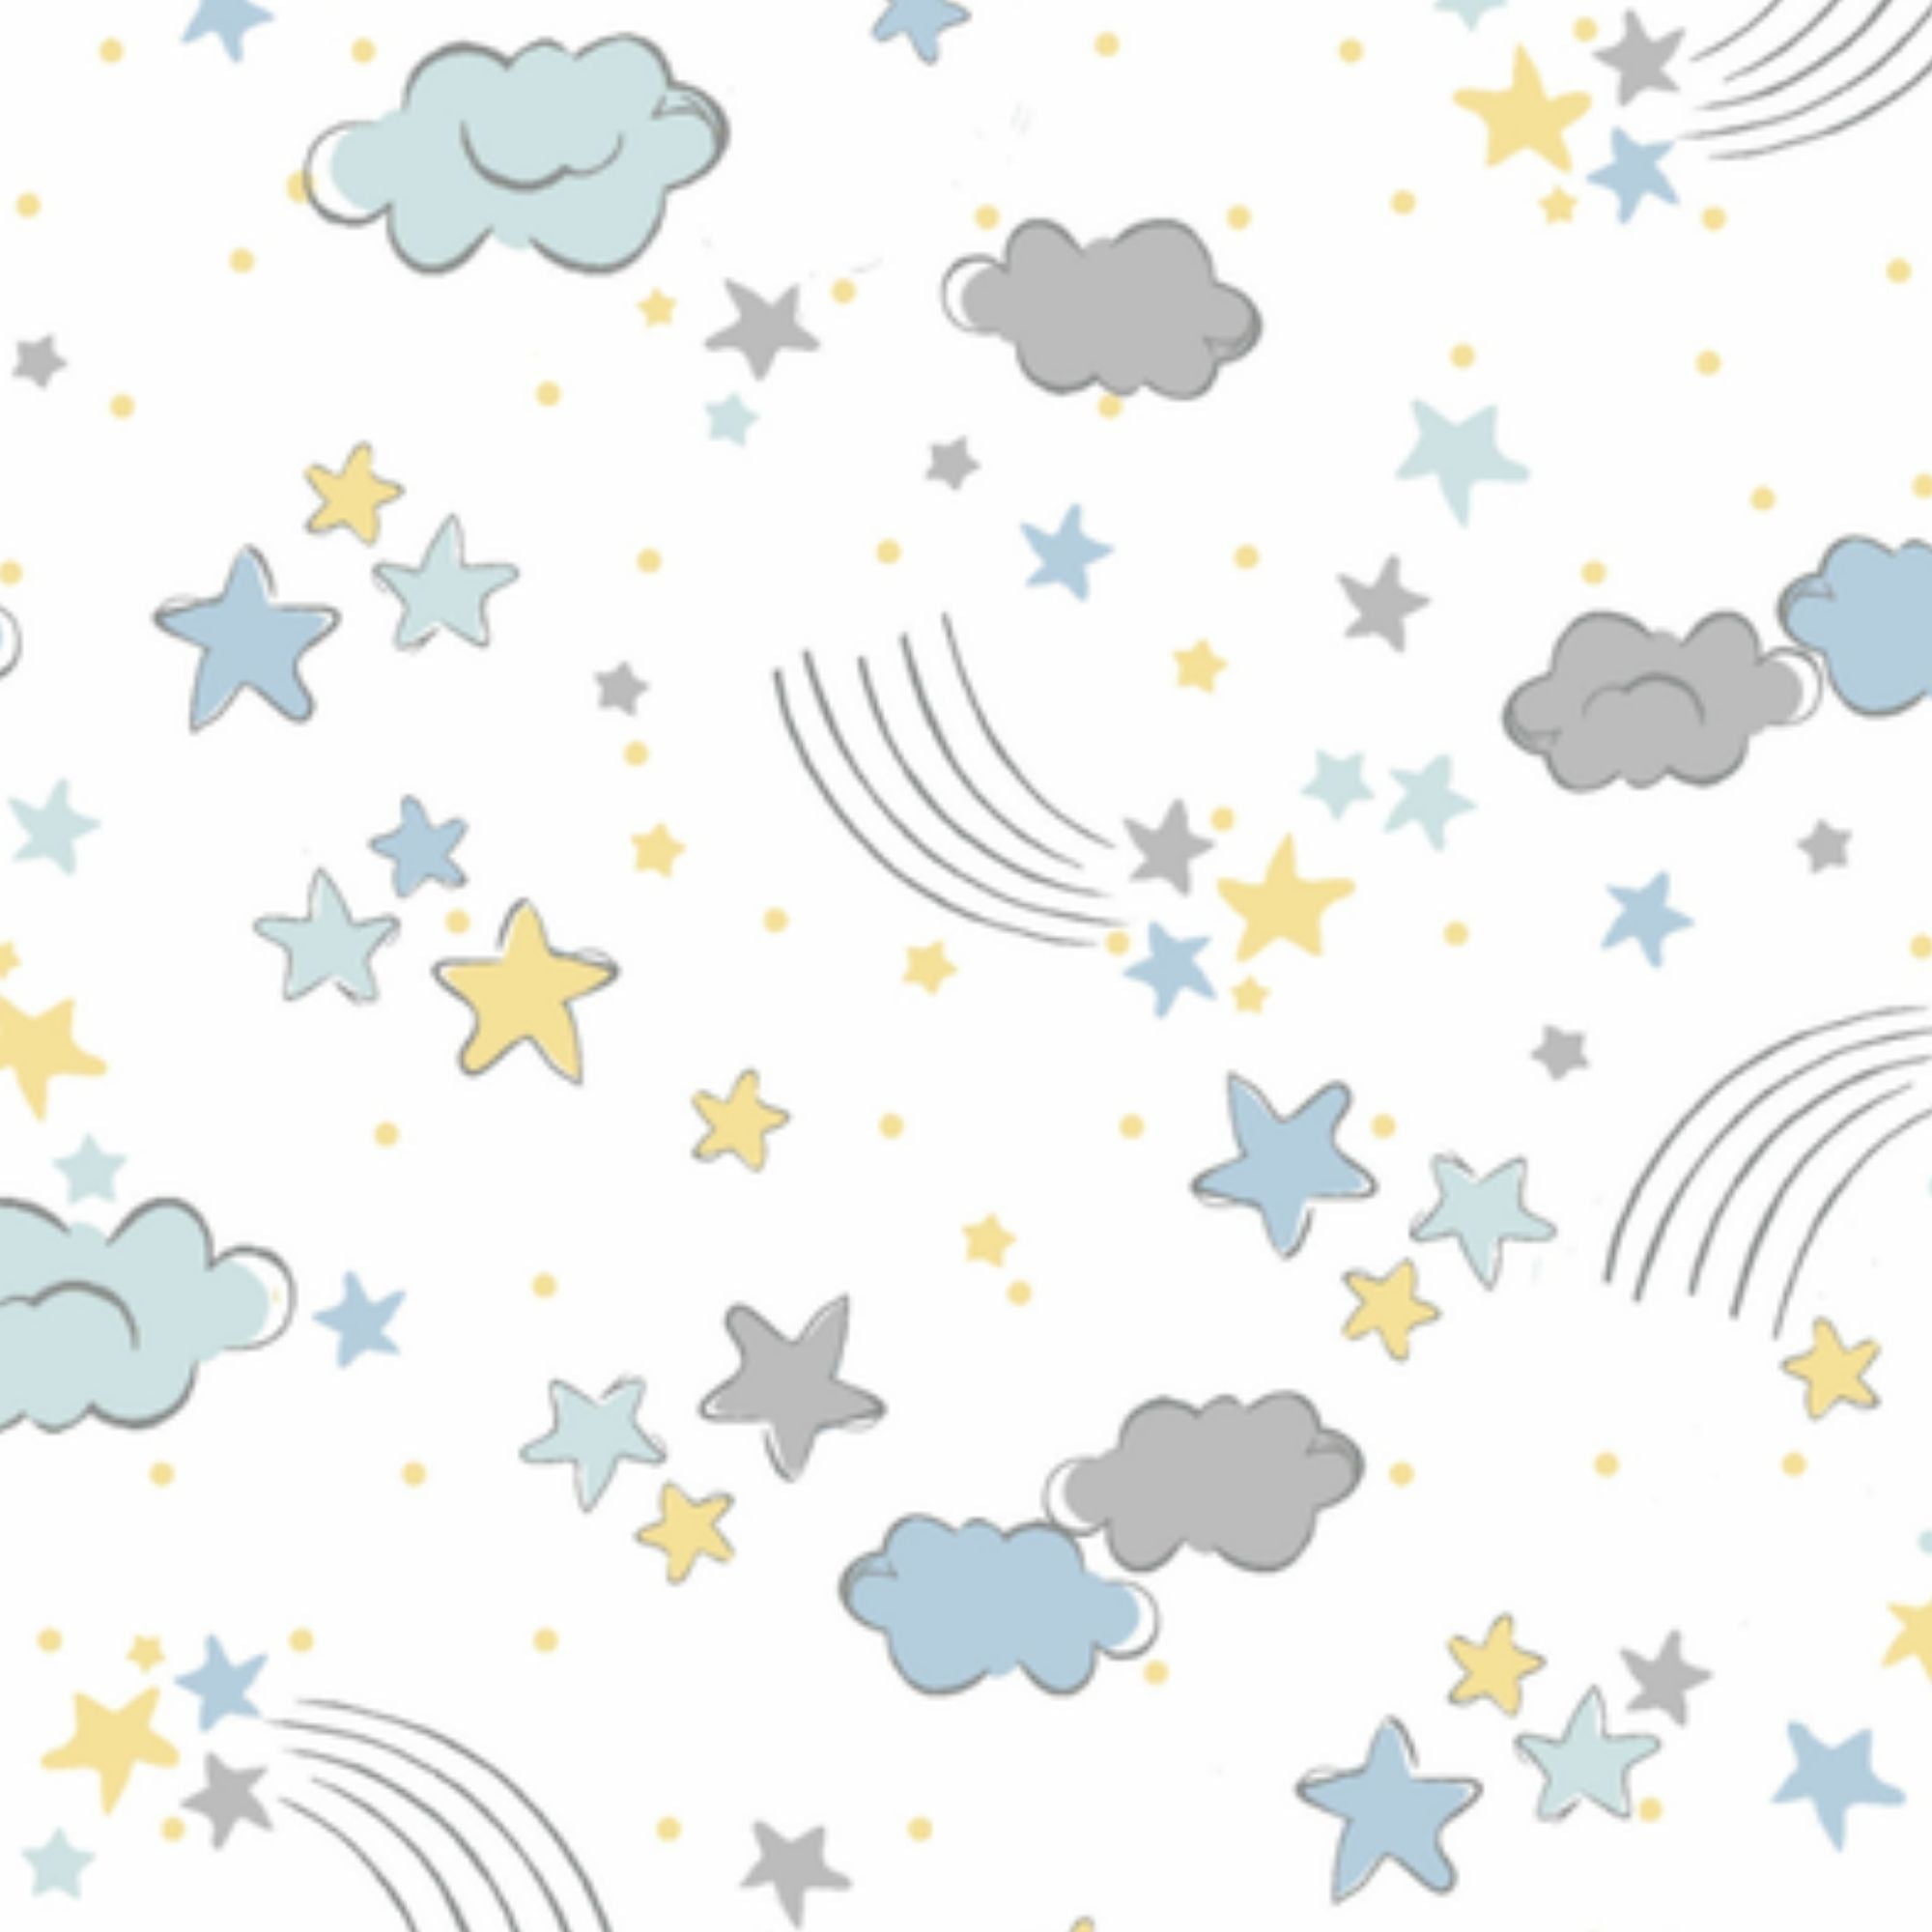 Tecido Tricoline Estrelas e Nuvens Amarelo e Azul - Fundo Branco - Coleção Sonhos 